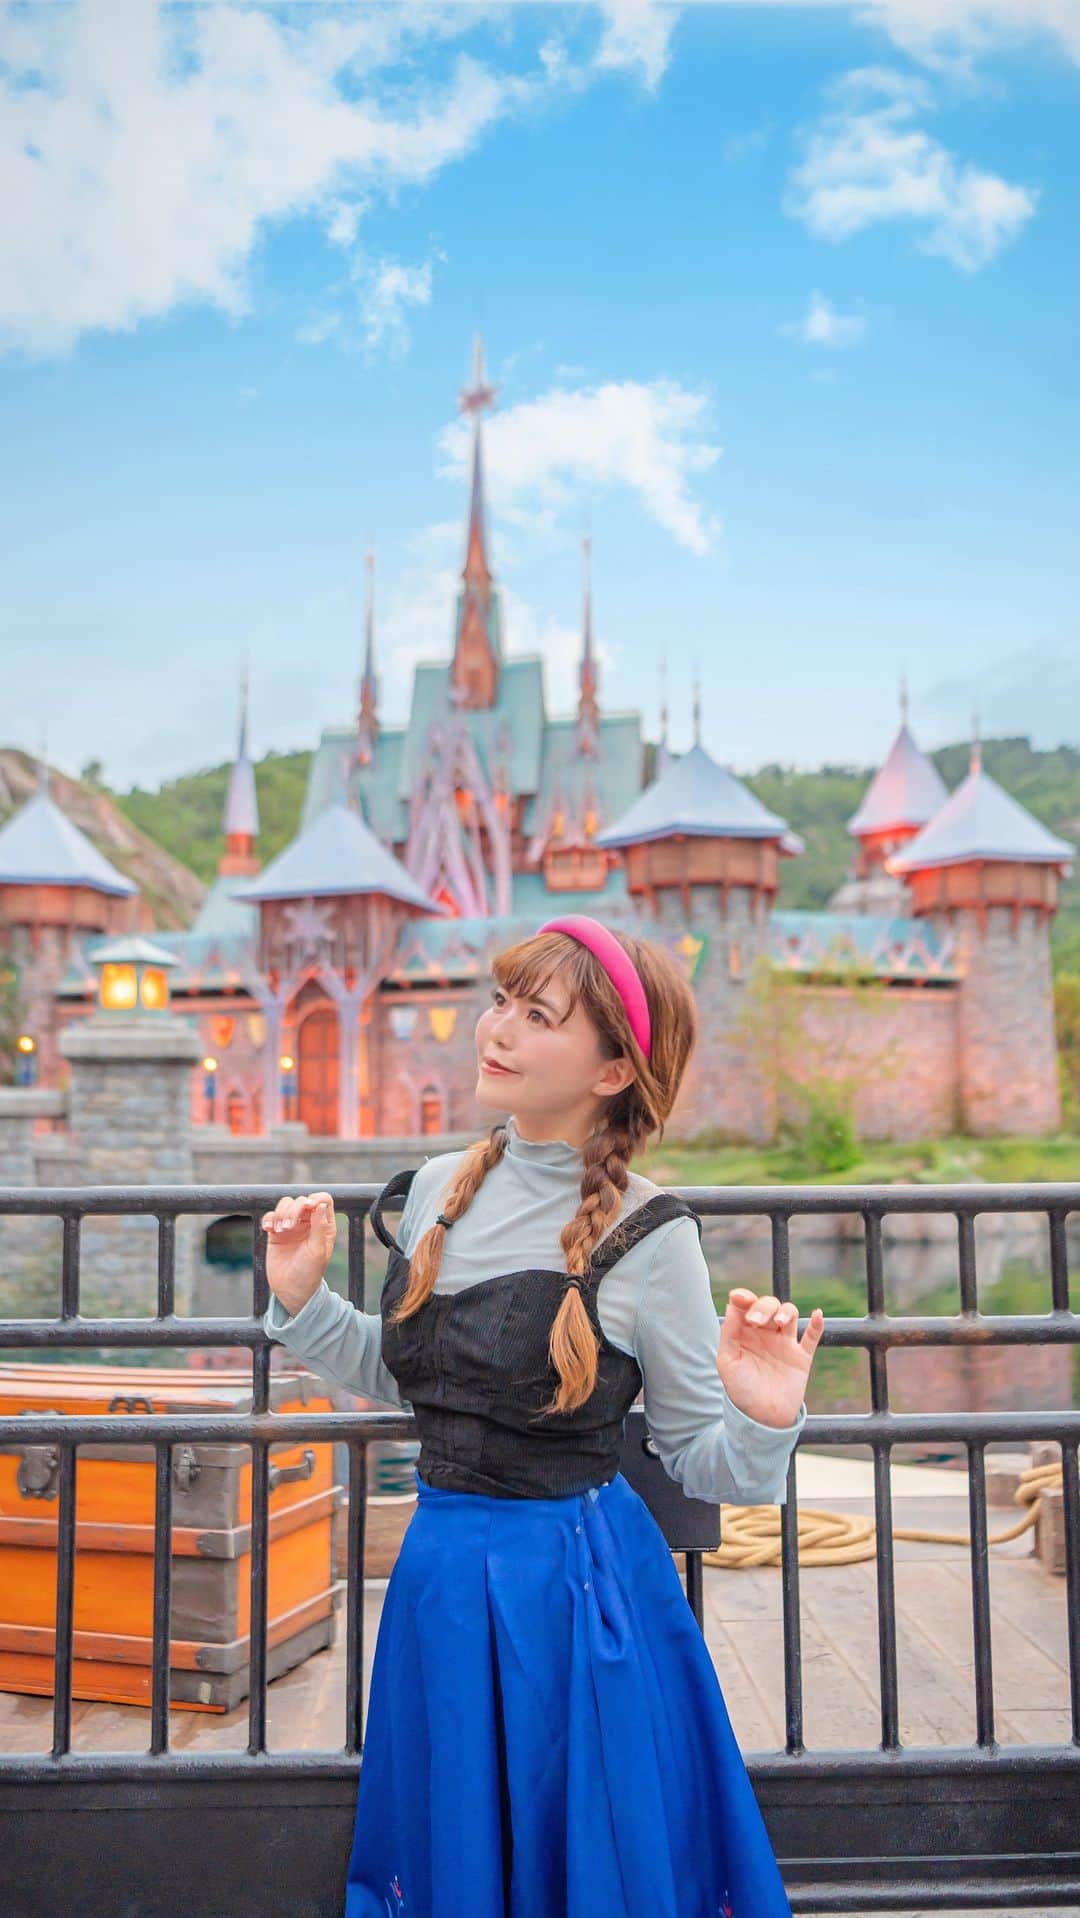 Kahoのインスタグラム：「. . For the first time in forever, I visited  Arendelle  in Hong Kong Disneyland 🏰❄️  アレンデールが、 アナと雪の女王の世界が、 本当にここにあった！！！😭😭😭😭✨  香港ディズニーランドに間も無く新しくオープンする アナ雪のエリア、ワールドオブフローズン！  とってもありがたいことに 一足お先に体験させていただきました🥹✨  全てが映画そのものの世界で、  ディズニーランドの新しいエリア、というよりも “そこにアレンデール王国ができた” という感じで、  本当に本当に素晴らしかった😭😭😭✨✨✨  動画も写真もたくさん撮ったし 最新のアトラクションにも乗って ショーも見たのでたくさん載せて行くね！！❄️  #ワールドオブフローズン#worldoffrozen #香港ディズニーランド #香港ディズニー#香港 #hongkong #海外ディズニー #hongkongdisneyland #hongkongdisney #hkdisneyland #hkdisney#hongkongdisneyland香港迪士尼樂園 #香港迪士尼 #香港迪士尼樂園 #disneybound#disneybounding #アナバウンド#アナ雪バウンド#アナコーデ#frozen #frozenbound #annabound#annacosplay #frozencosplay #frozeneverafter #Arendelle#魔雪奇縁世界」